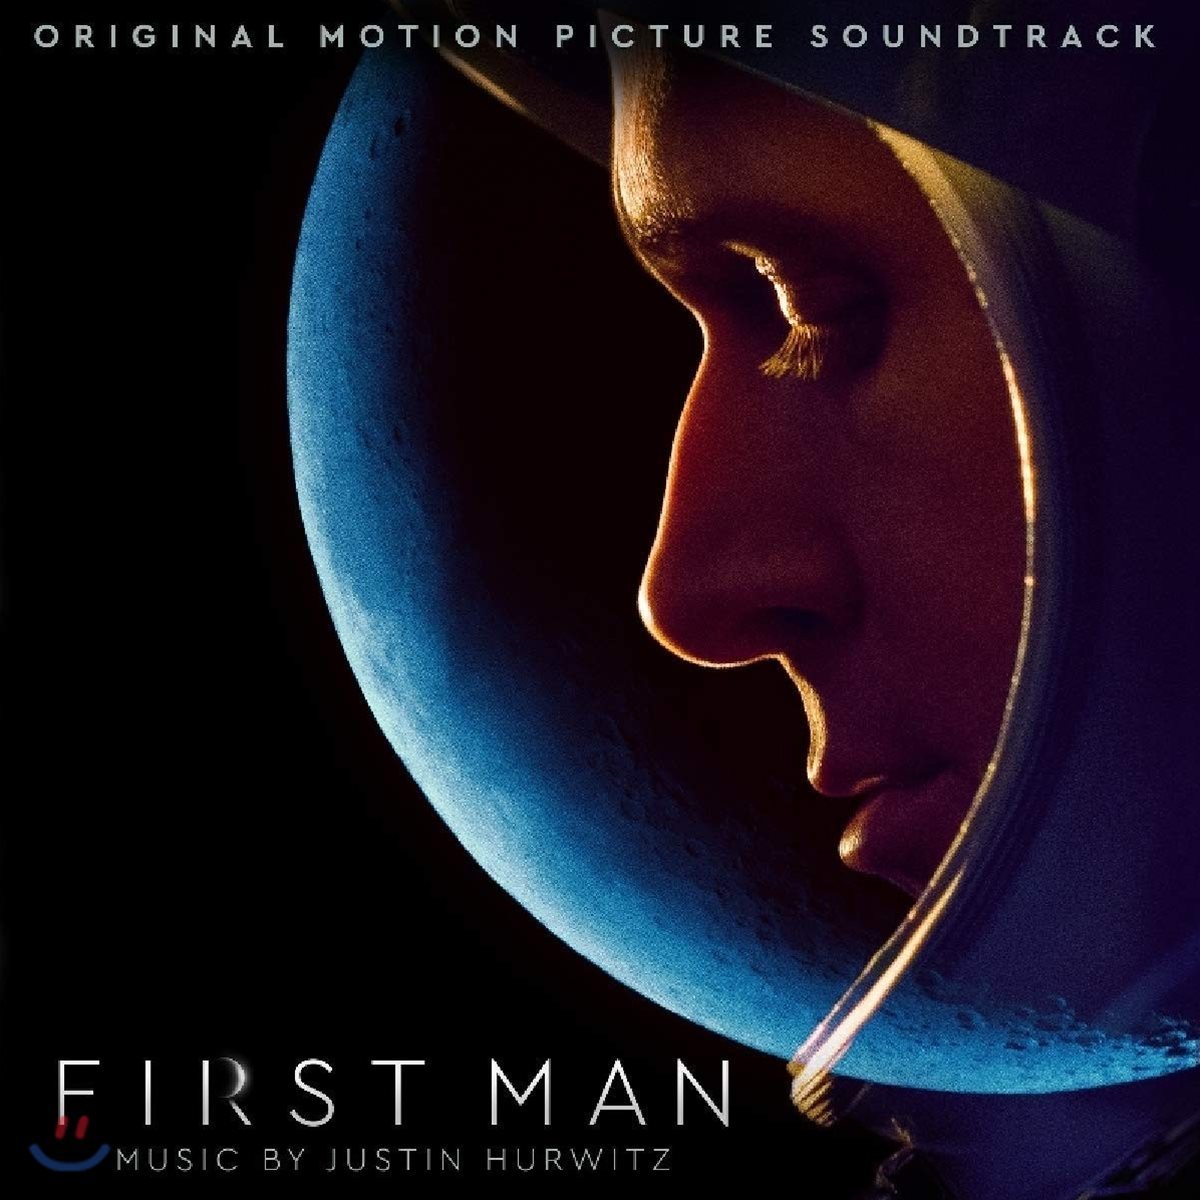 퍼스트맨 영화음악 (First Man OST by Justin Hurwitz)